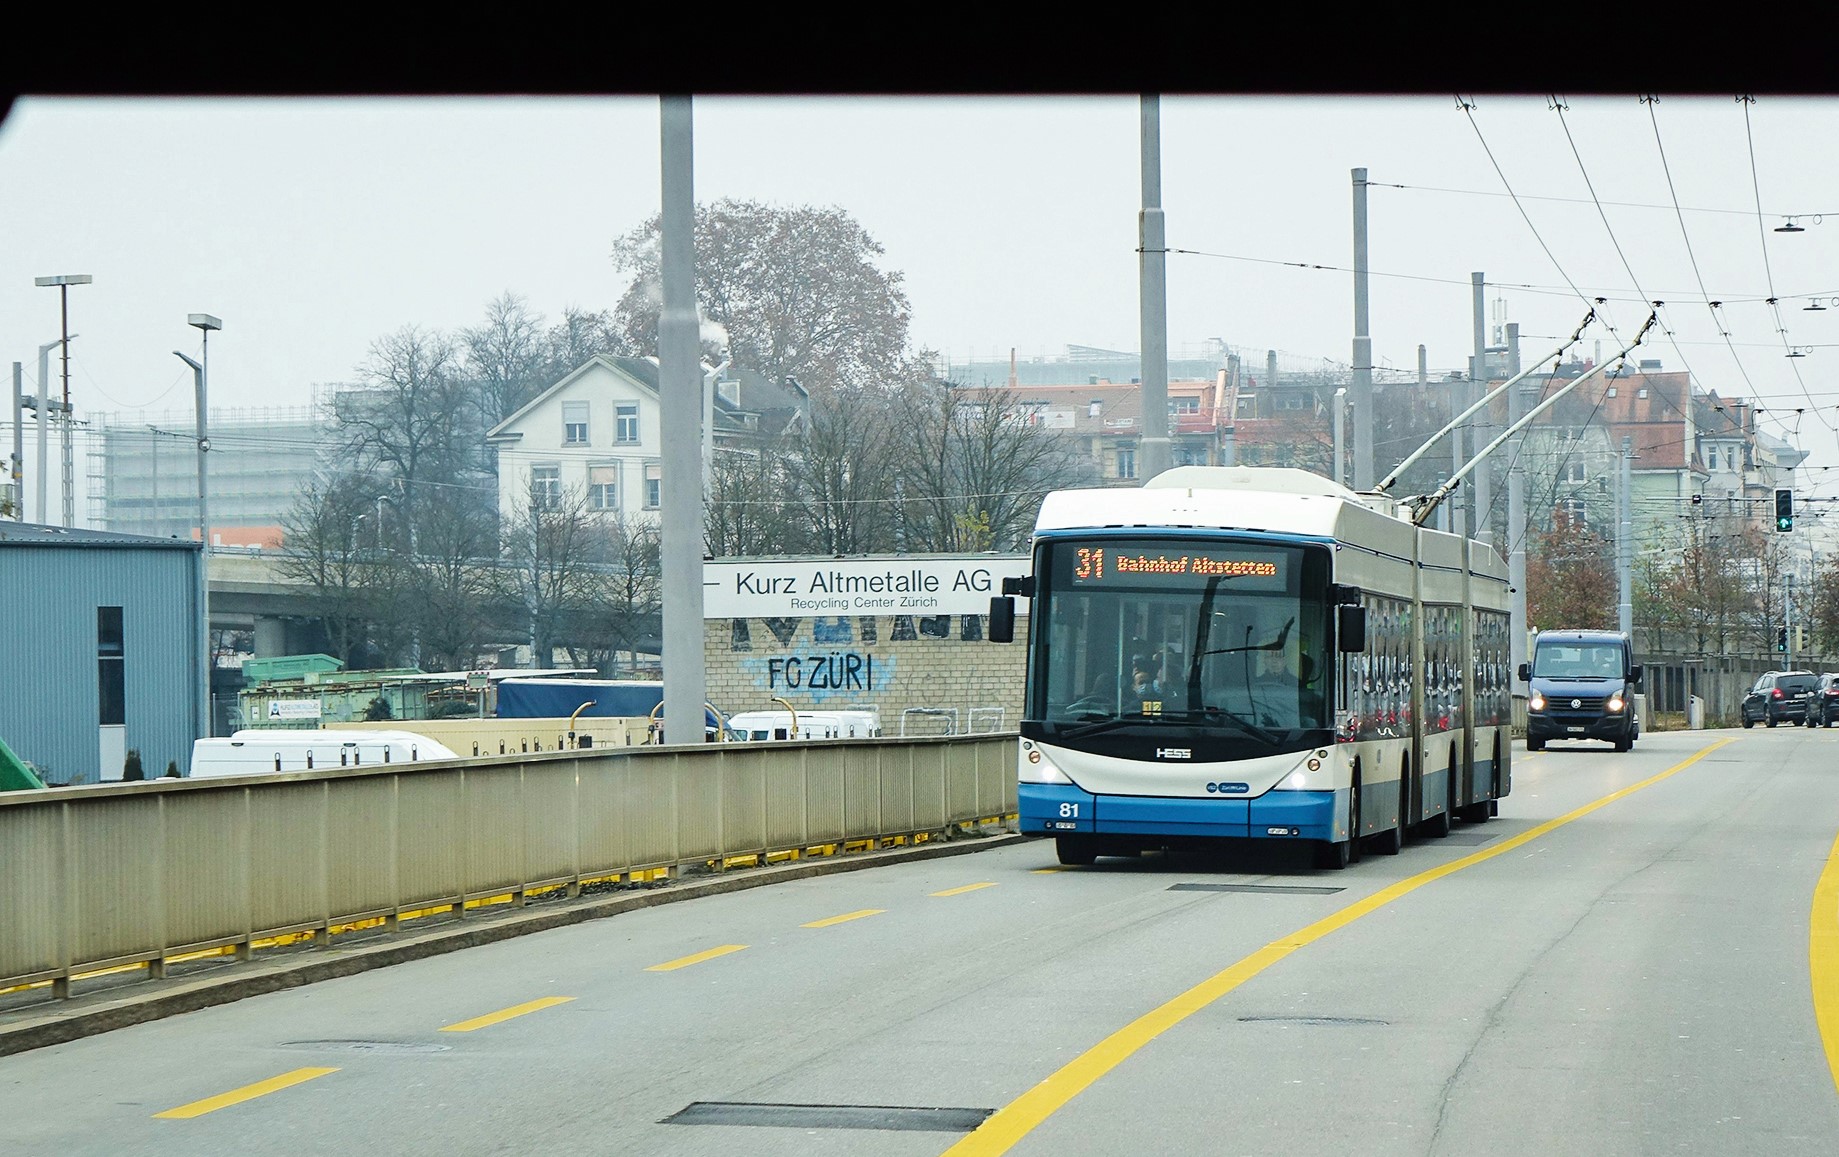 Zürich: Obojsmerný pruh pre autobusy, ktorý použije vodič trolejbusu v tom smere, v ktorom je dopravná zápcha. Nie je tu žiadna signalizácia, používa sa zdravý rozum.